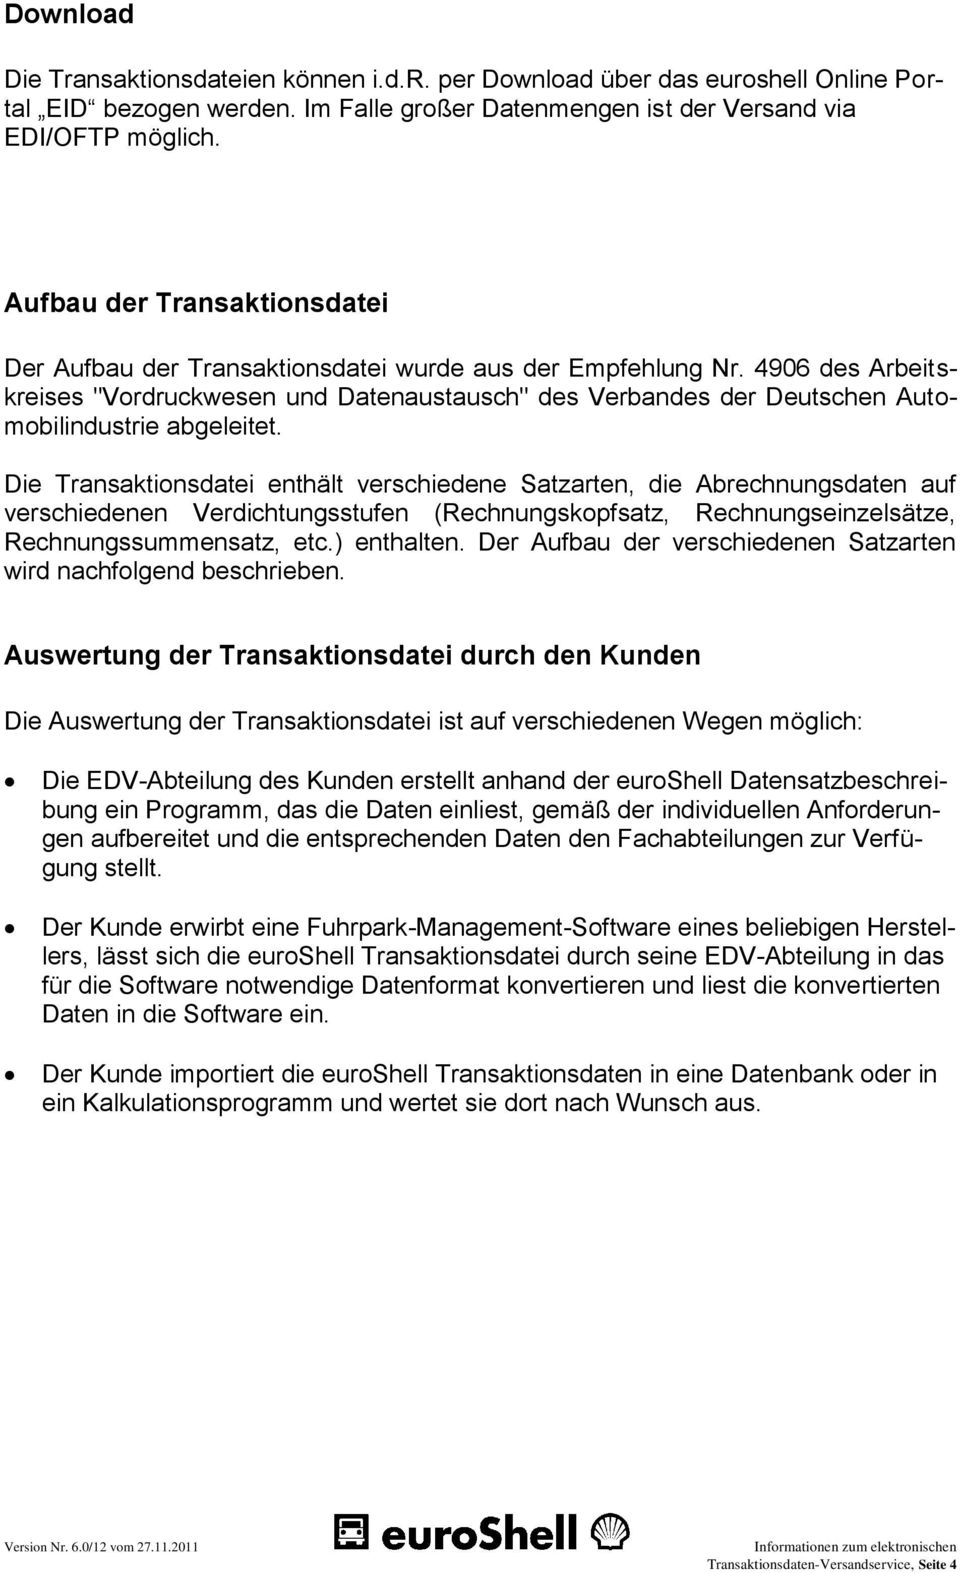 4906 des Arbeitskreises "Vordruckwesen und Datenaustausch" des Verbandes der Deutschen Automobilindustrie abgeleitet.